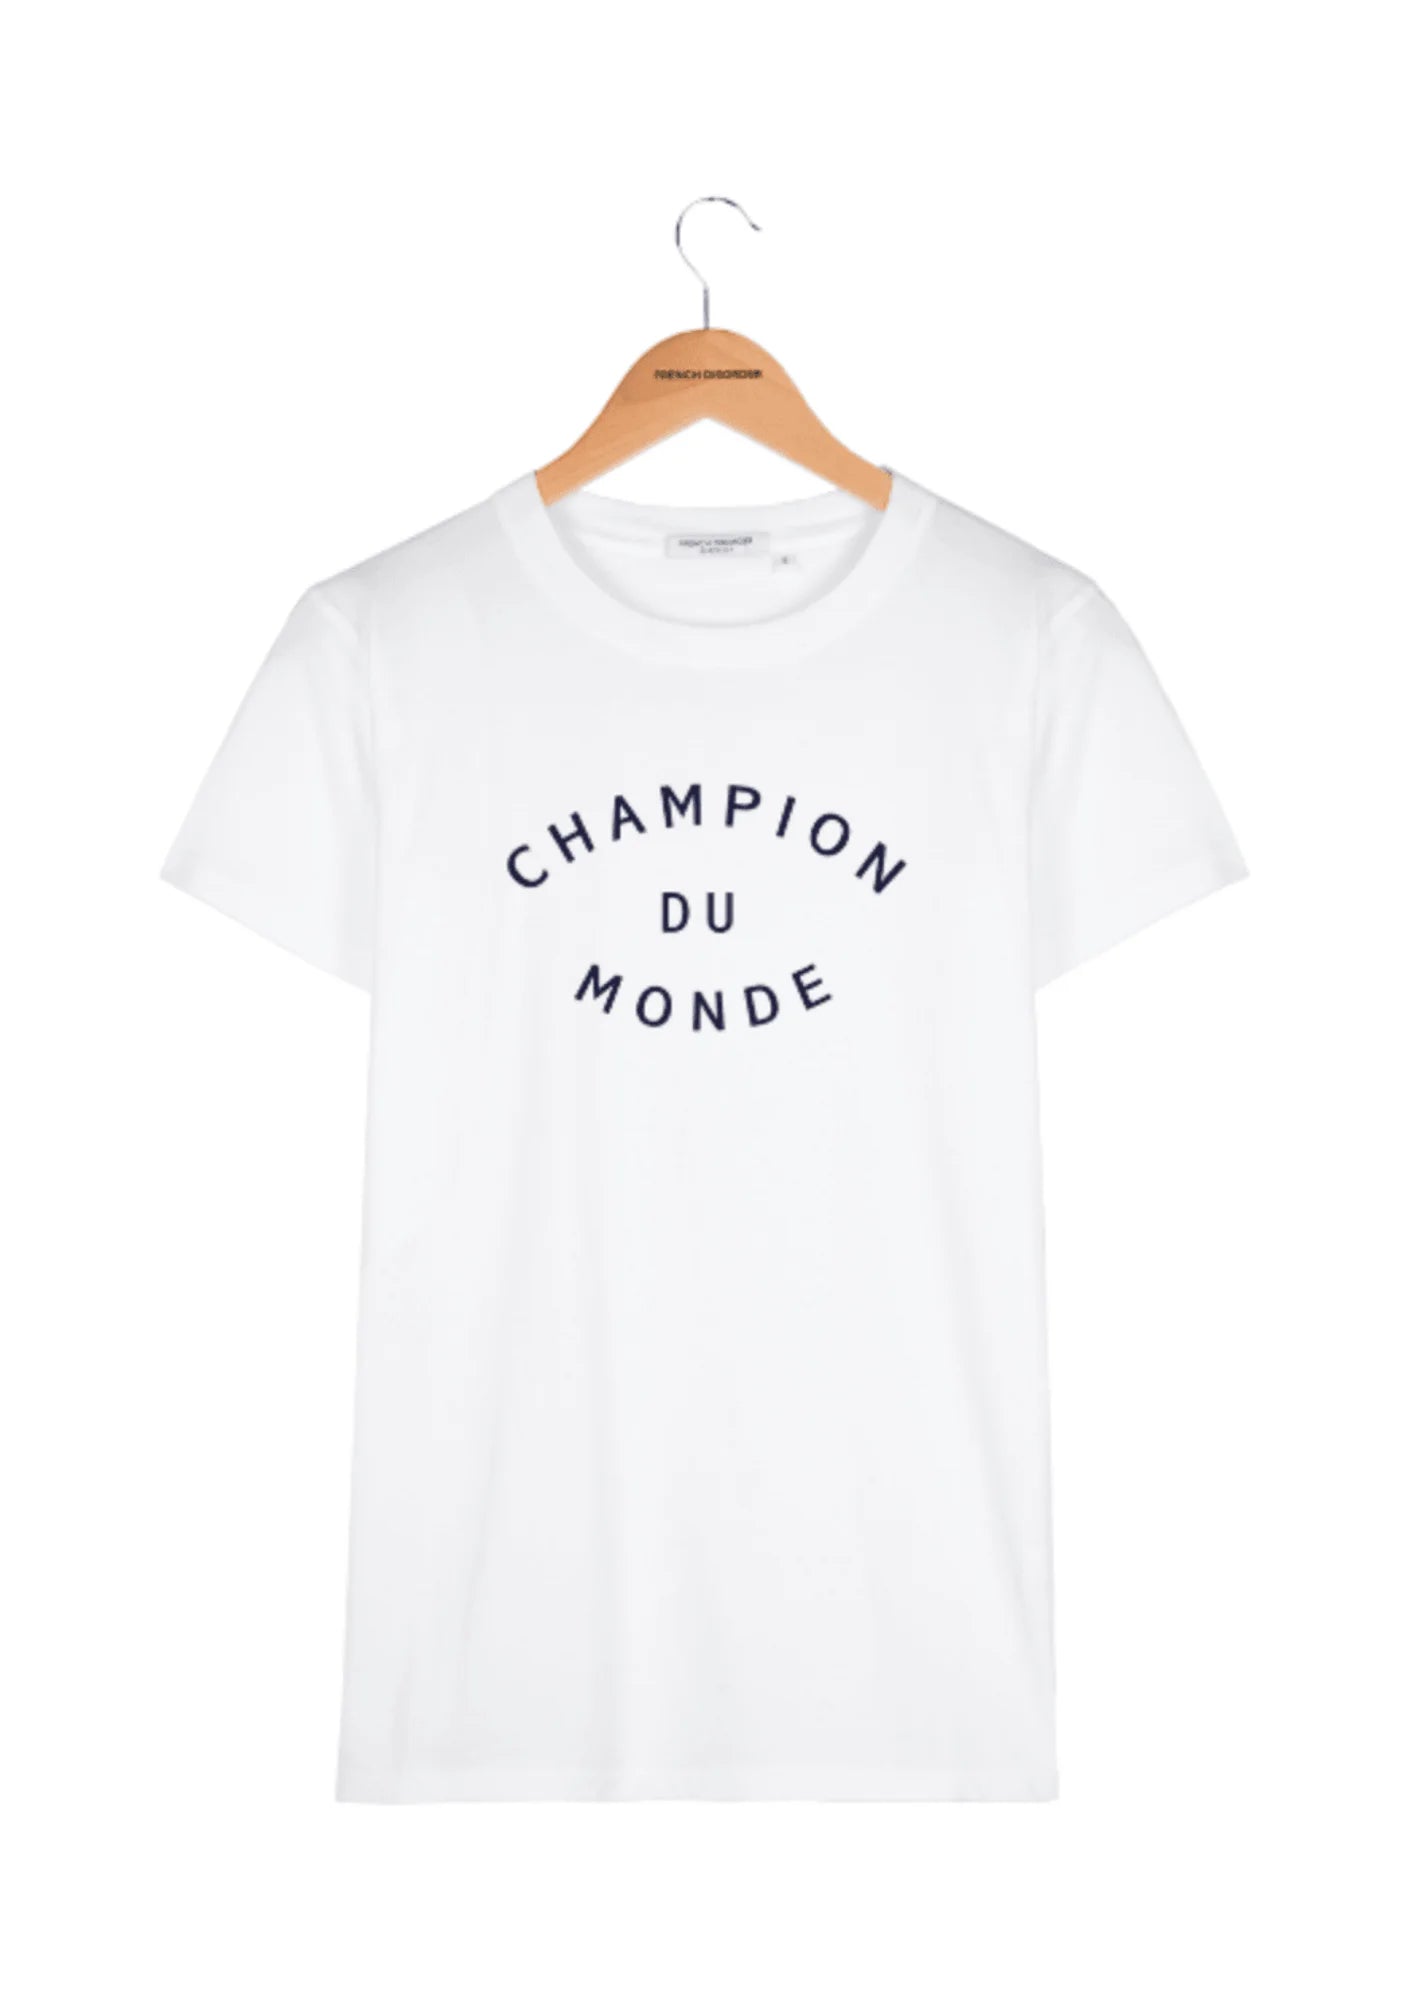 T-shirt champion du monde